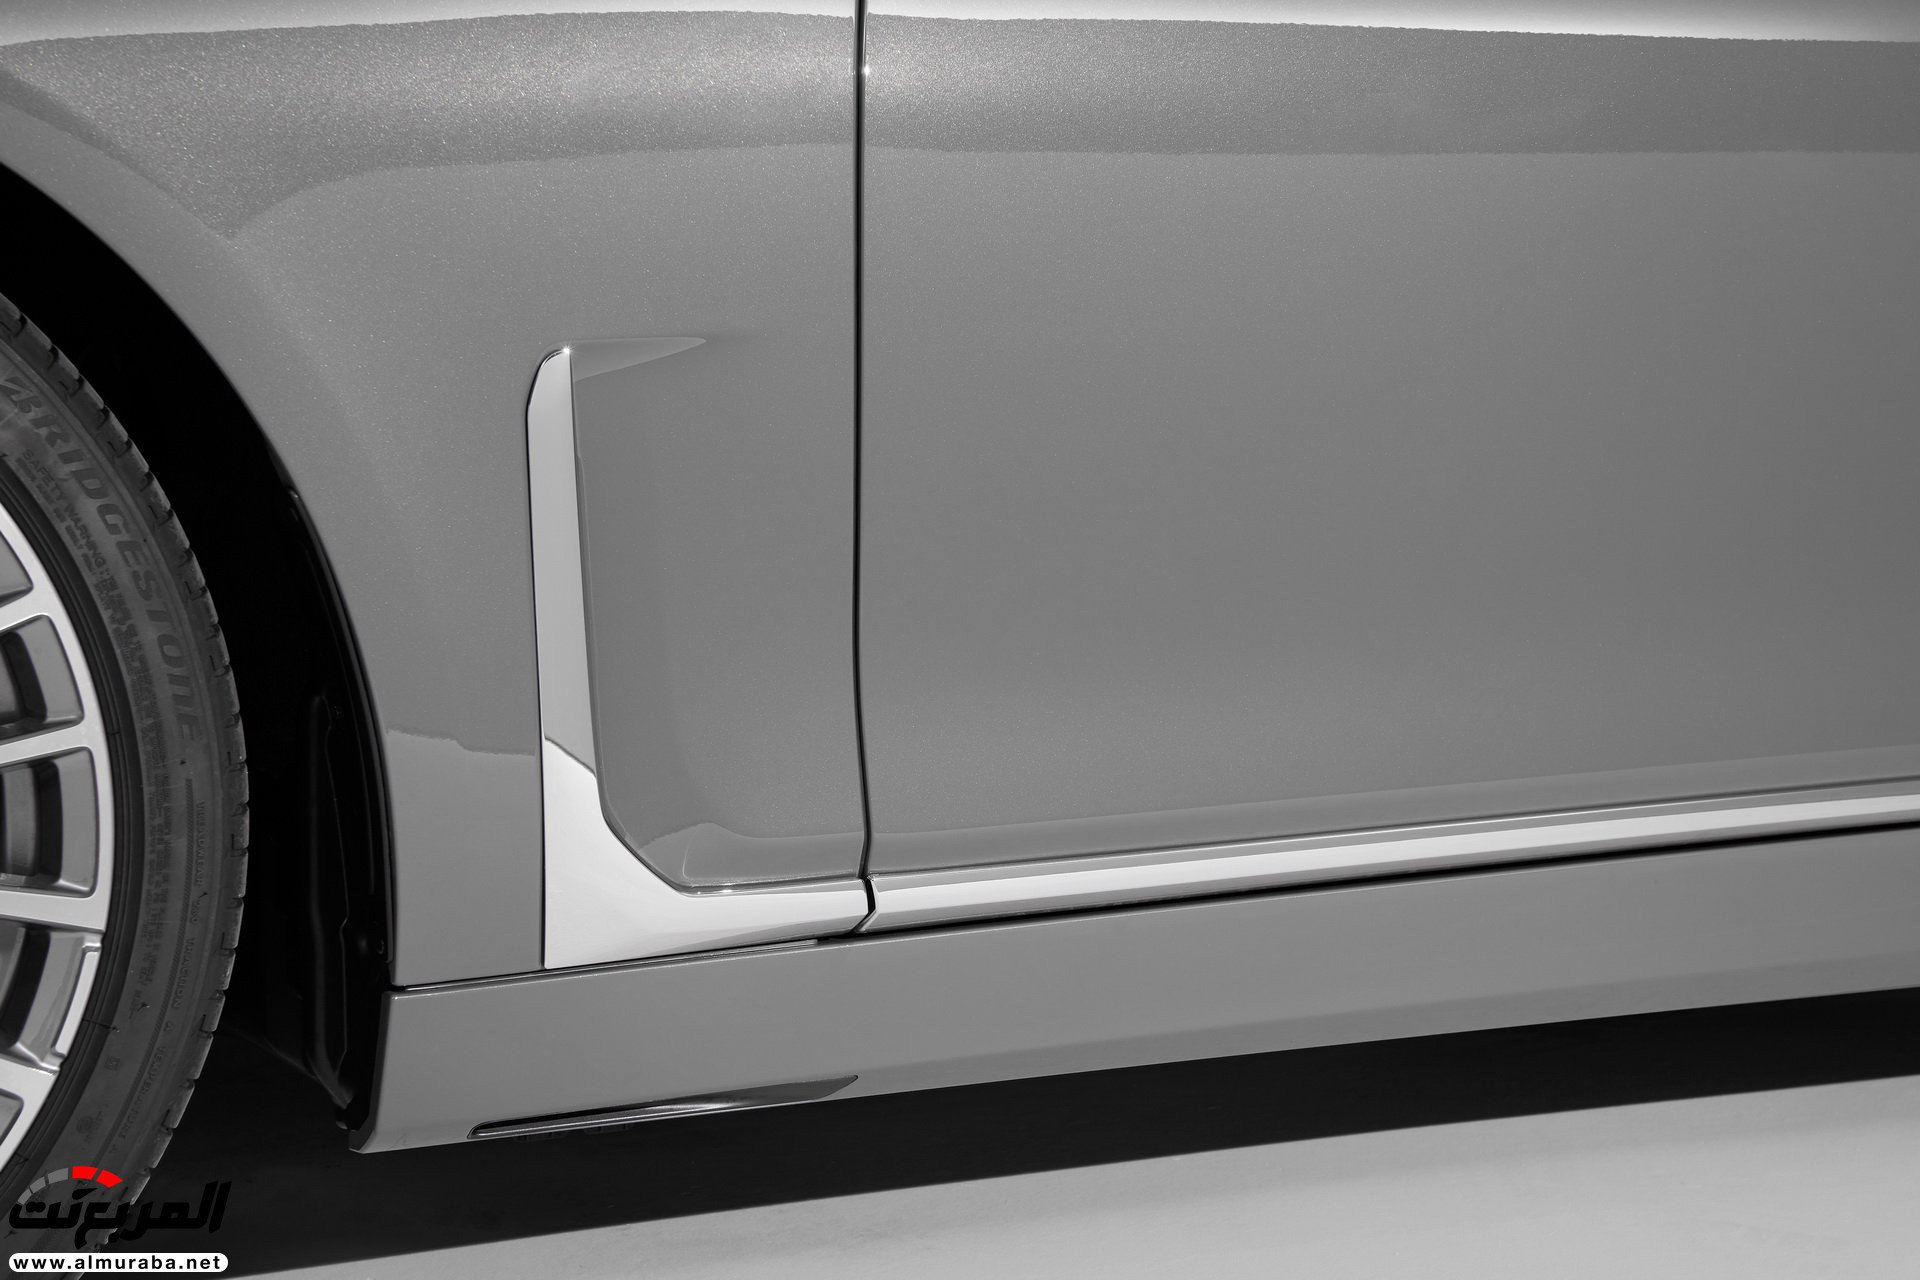 بي ام دبليو الفئة السابعة 2020 المحدثة تكشف نفسها رسمياً "صور ومواصفات" BMW 7 Series 277